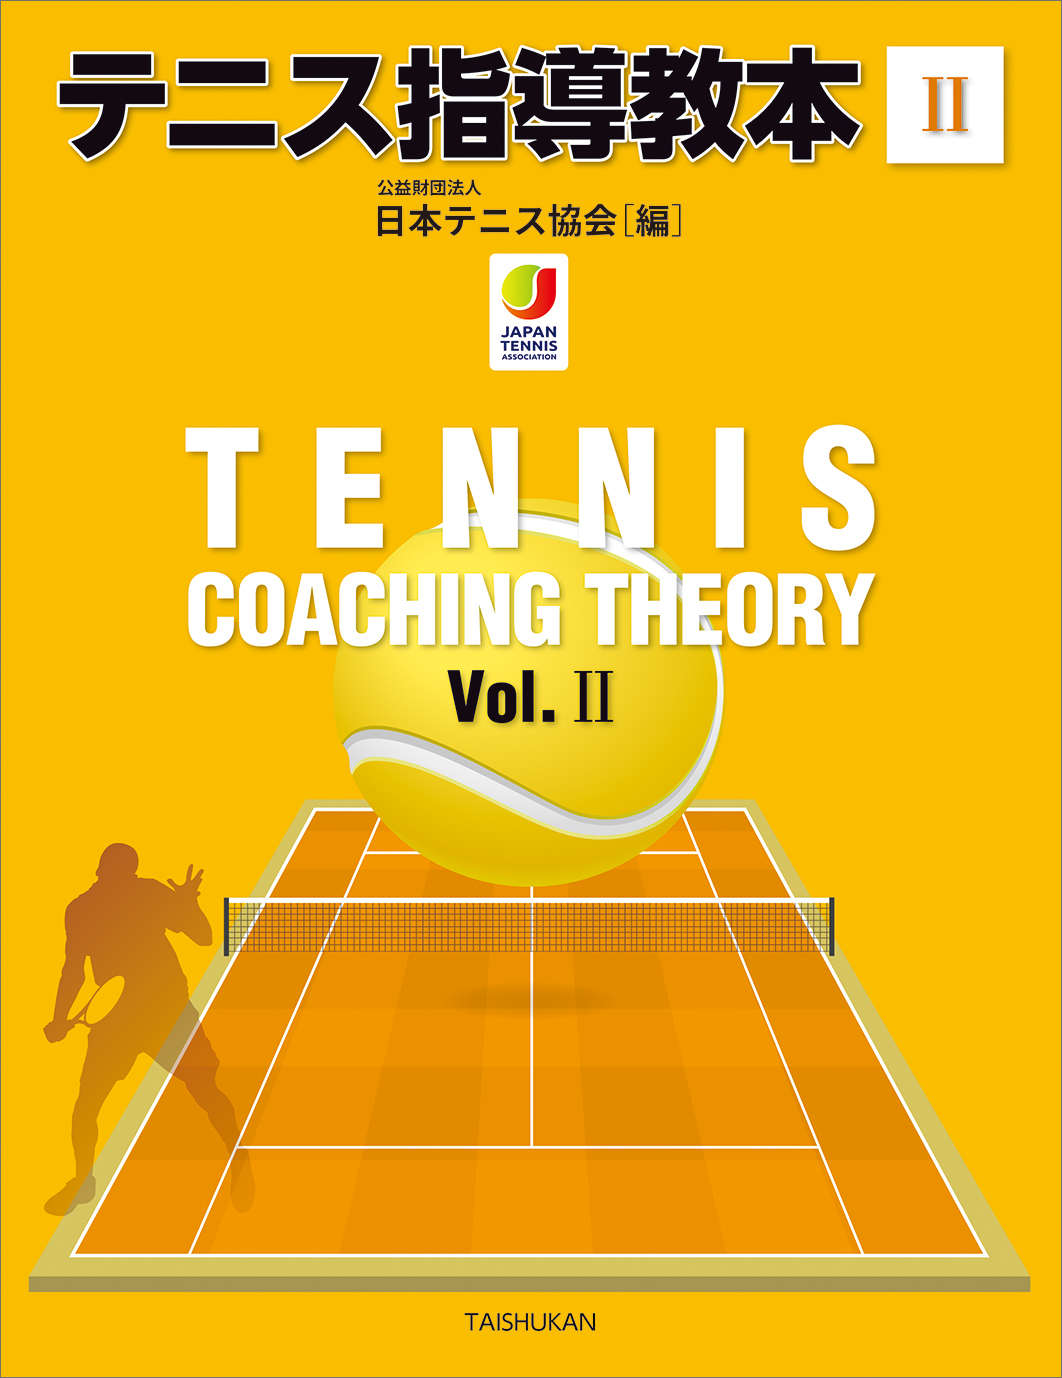 『 テニス指導教本Ⅱ 』